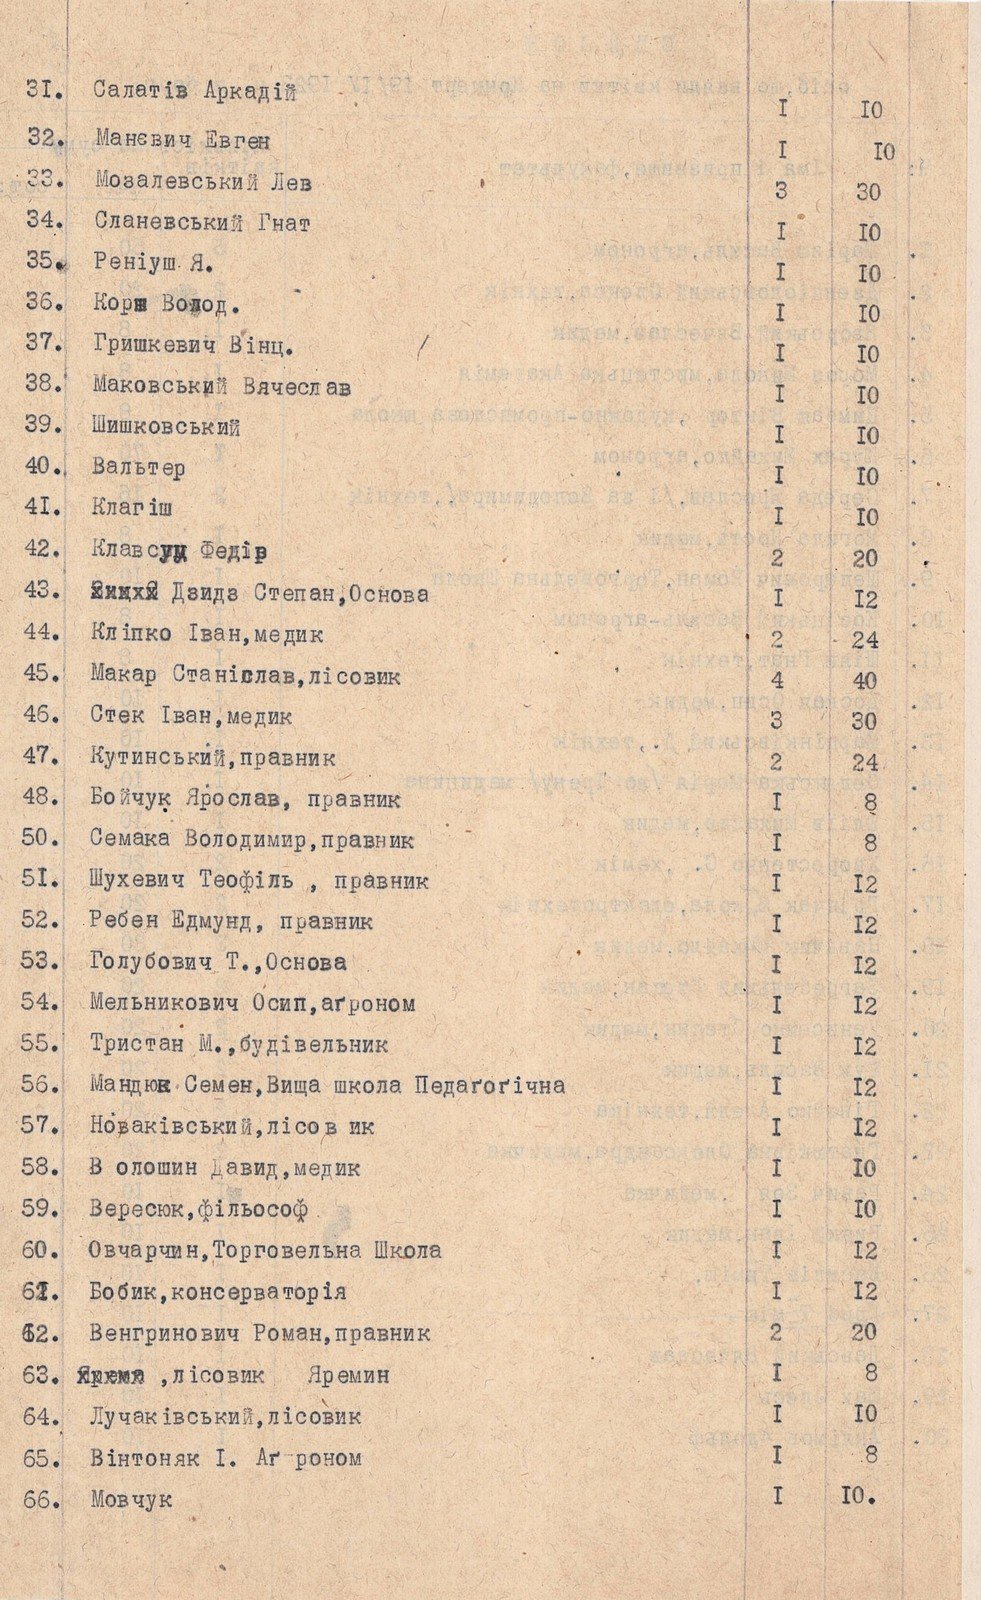 Список осіб, що взяли квитки в борг на концерт під протекторатом А. Масарик, улаштованому Українським громадським комітетом на користь голодуючих в Україні. Не раніше 19 квітня 1923 р. 